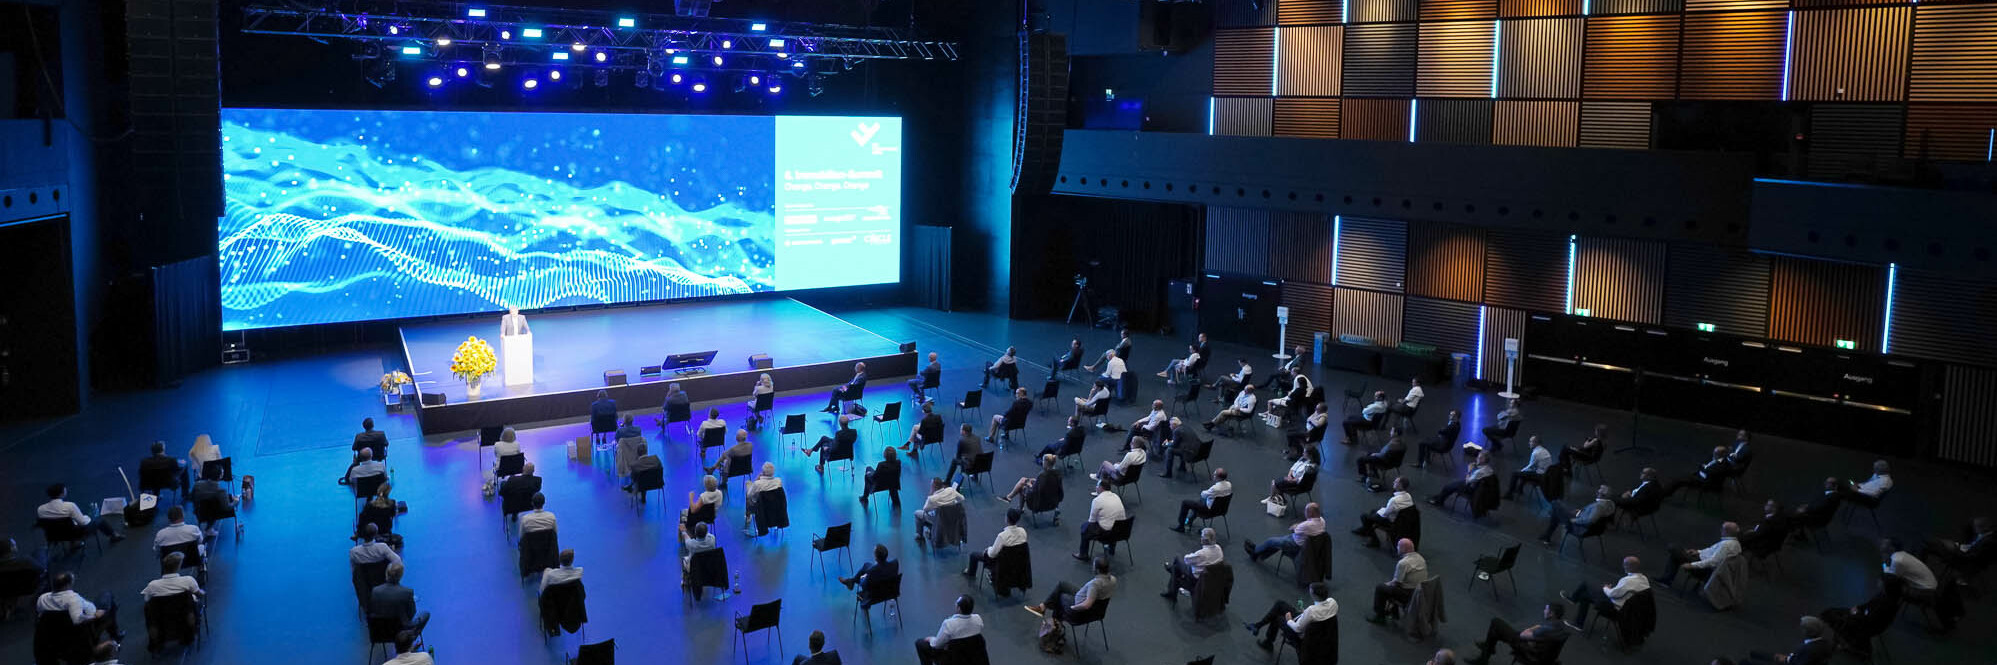 Events während der Coronakrise - das 6. Immobilien-Summit in der Samsung Hall Zürich